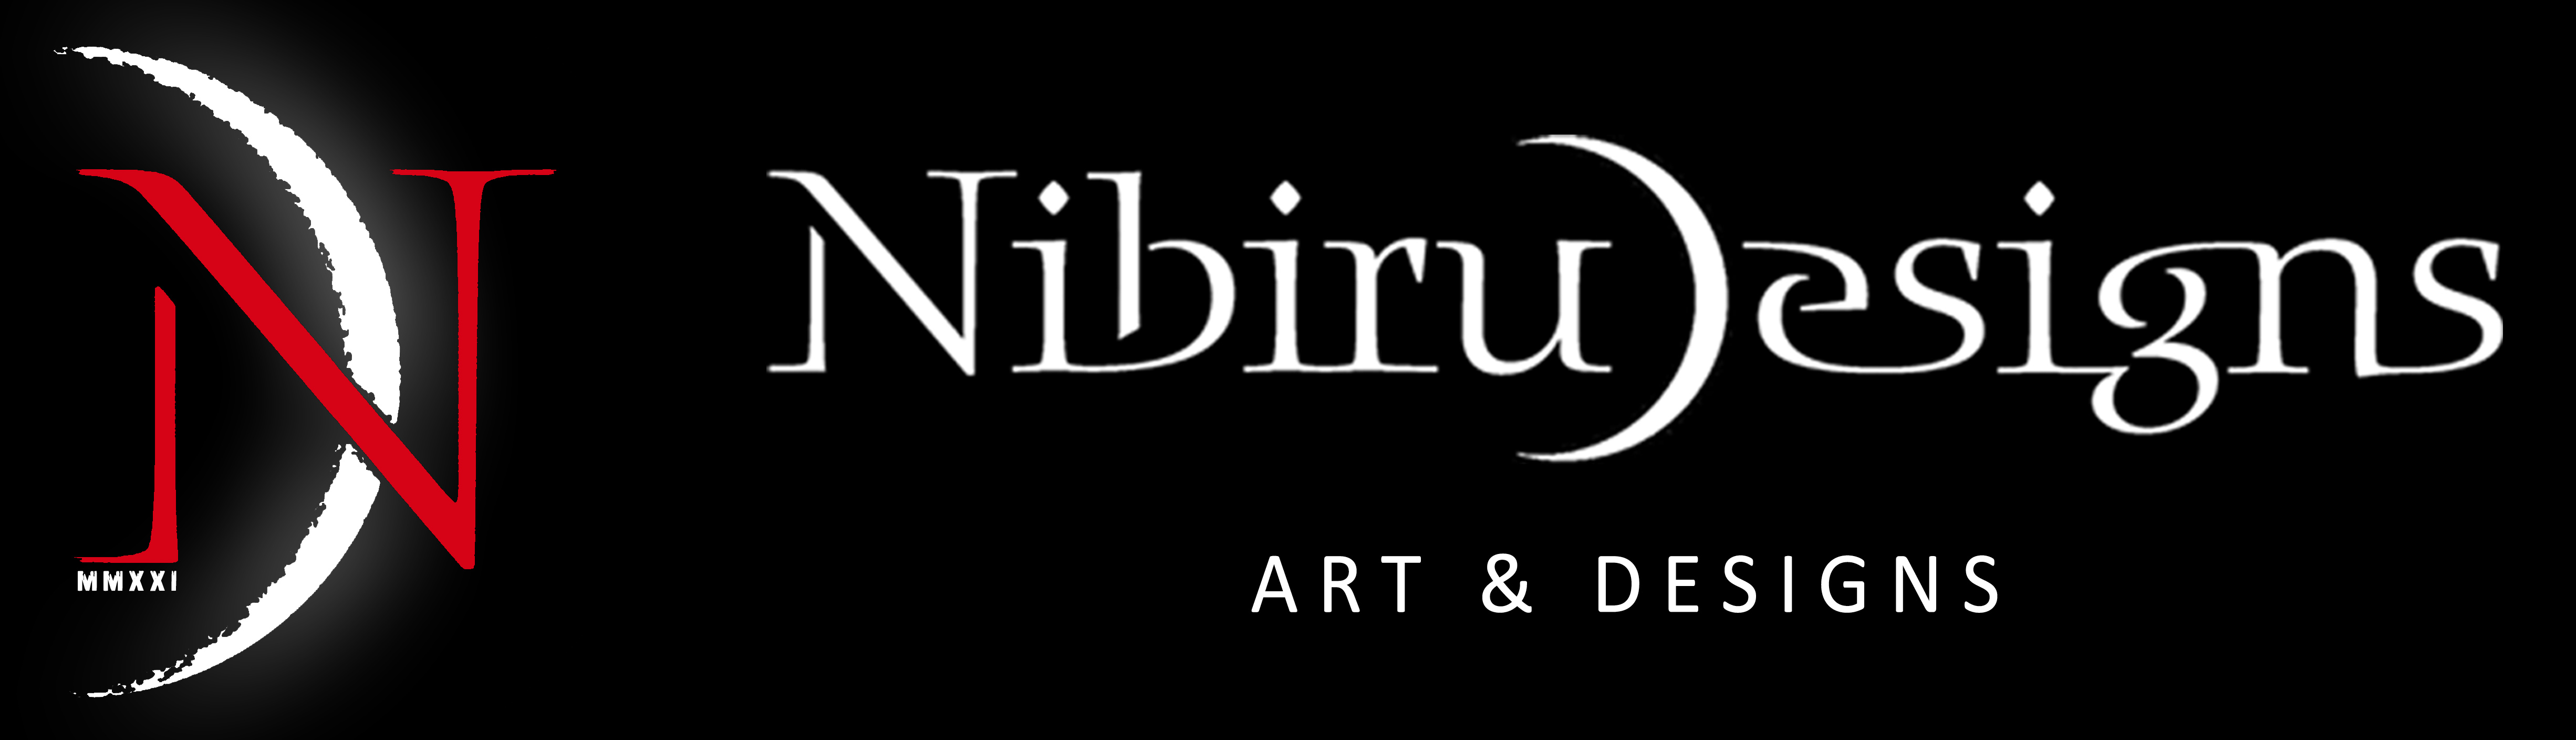 Nibiru Designs